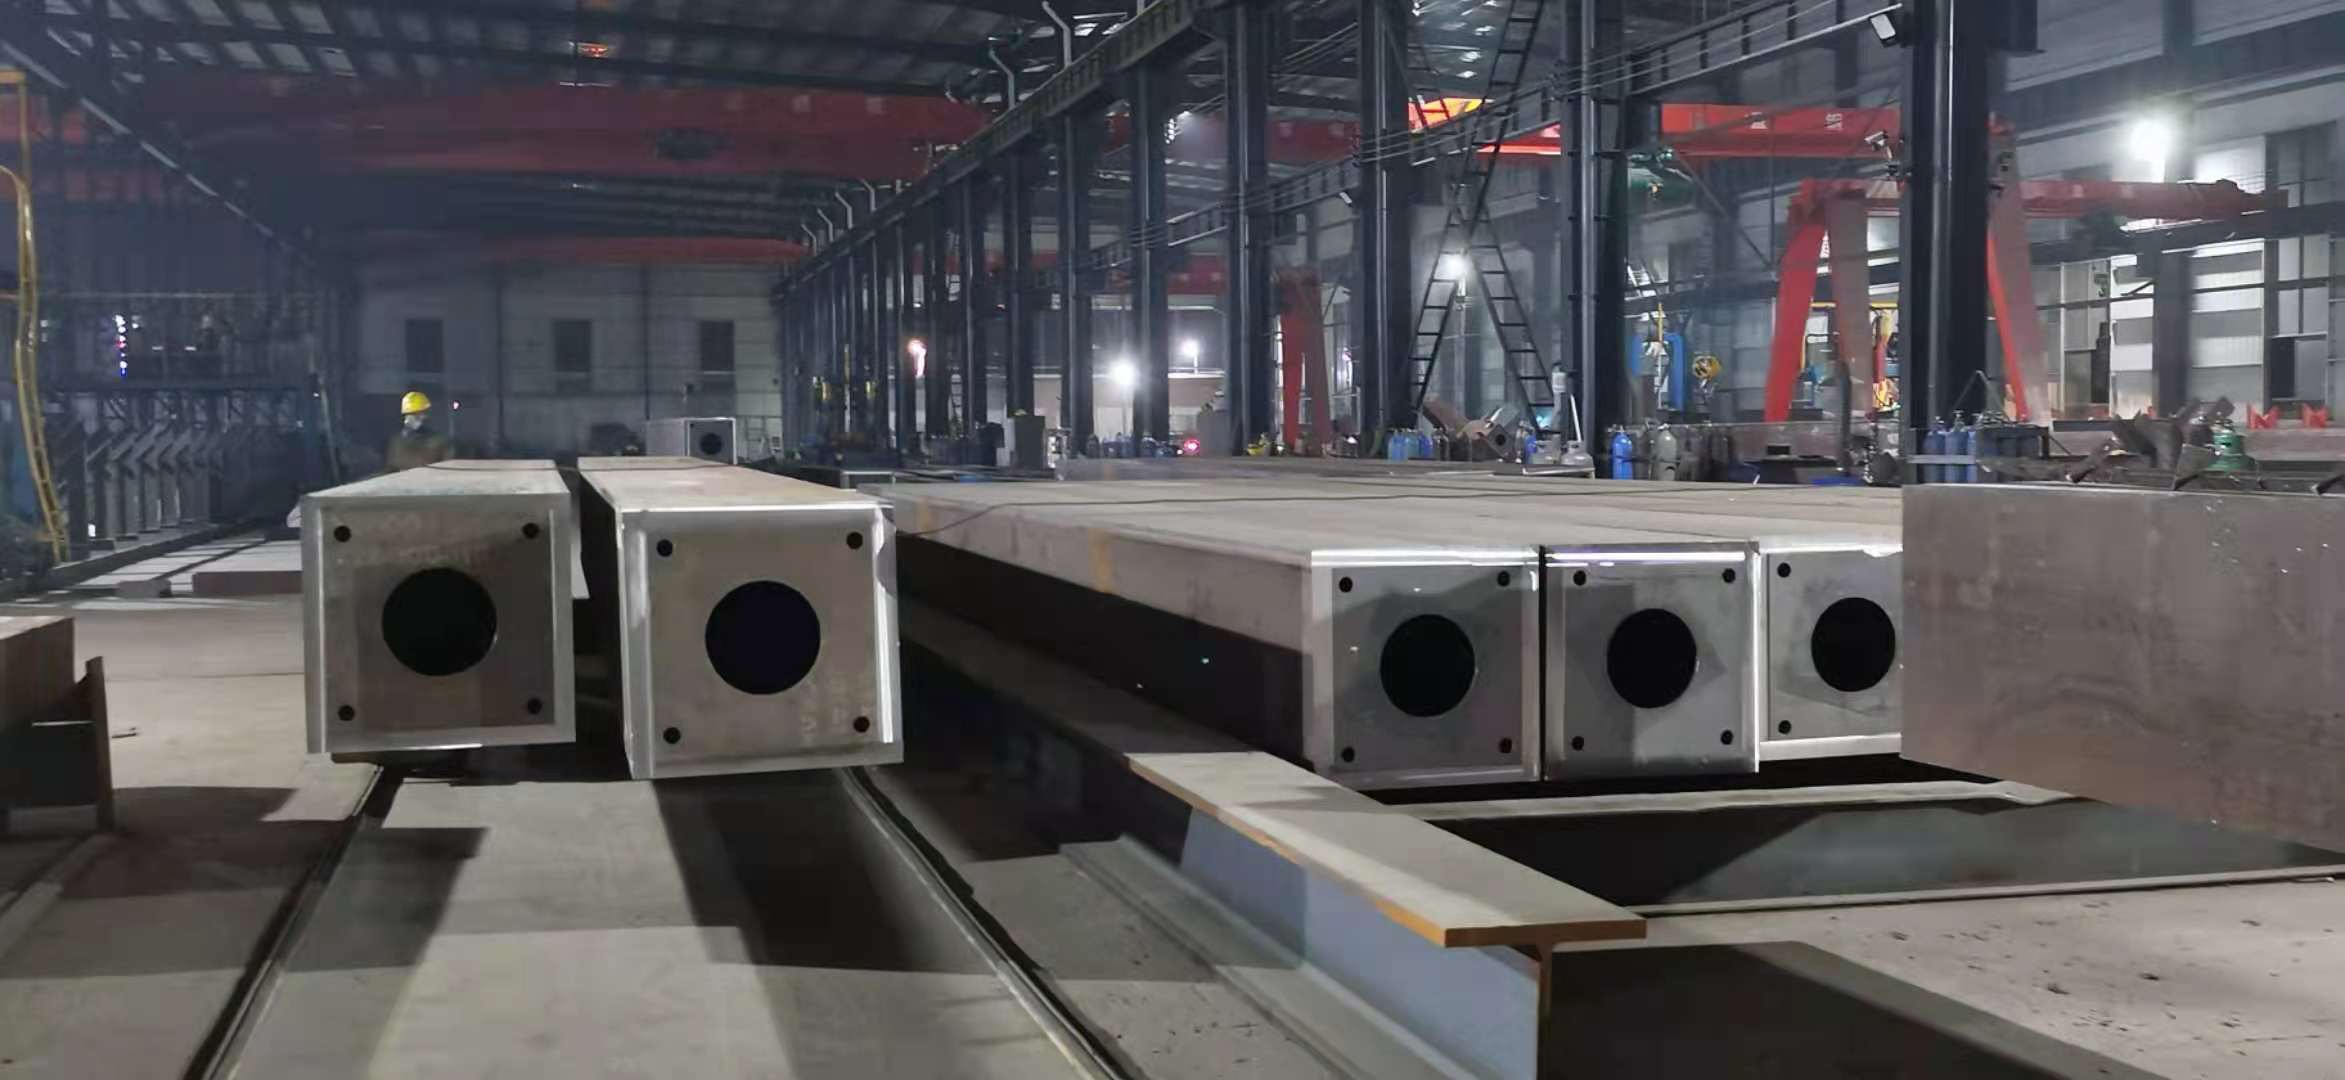 上海加工厂钢结构构件制作加工流程的全部流程。